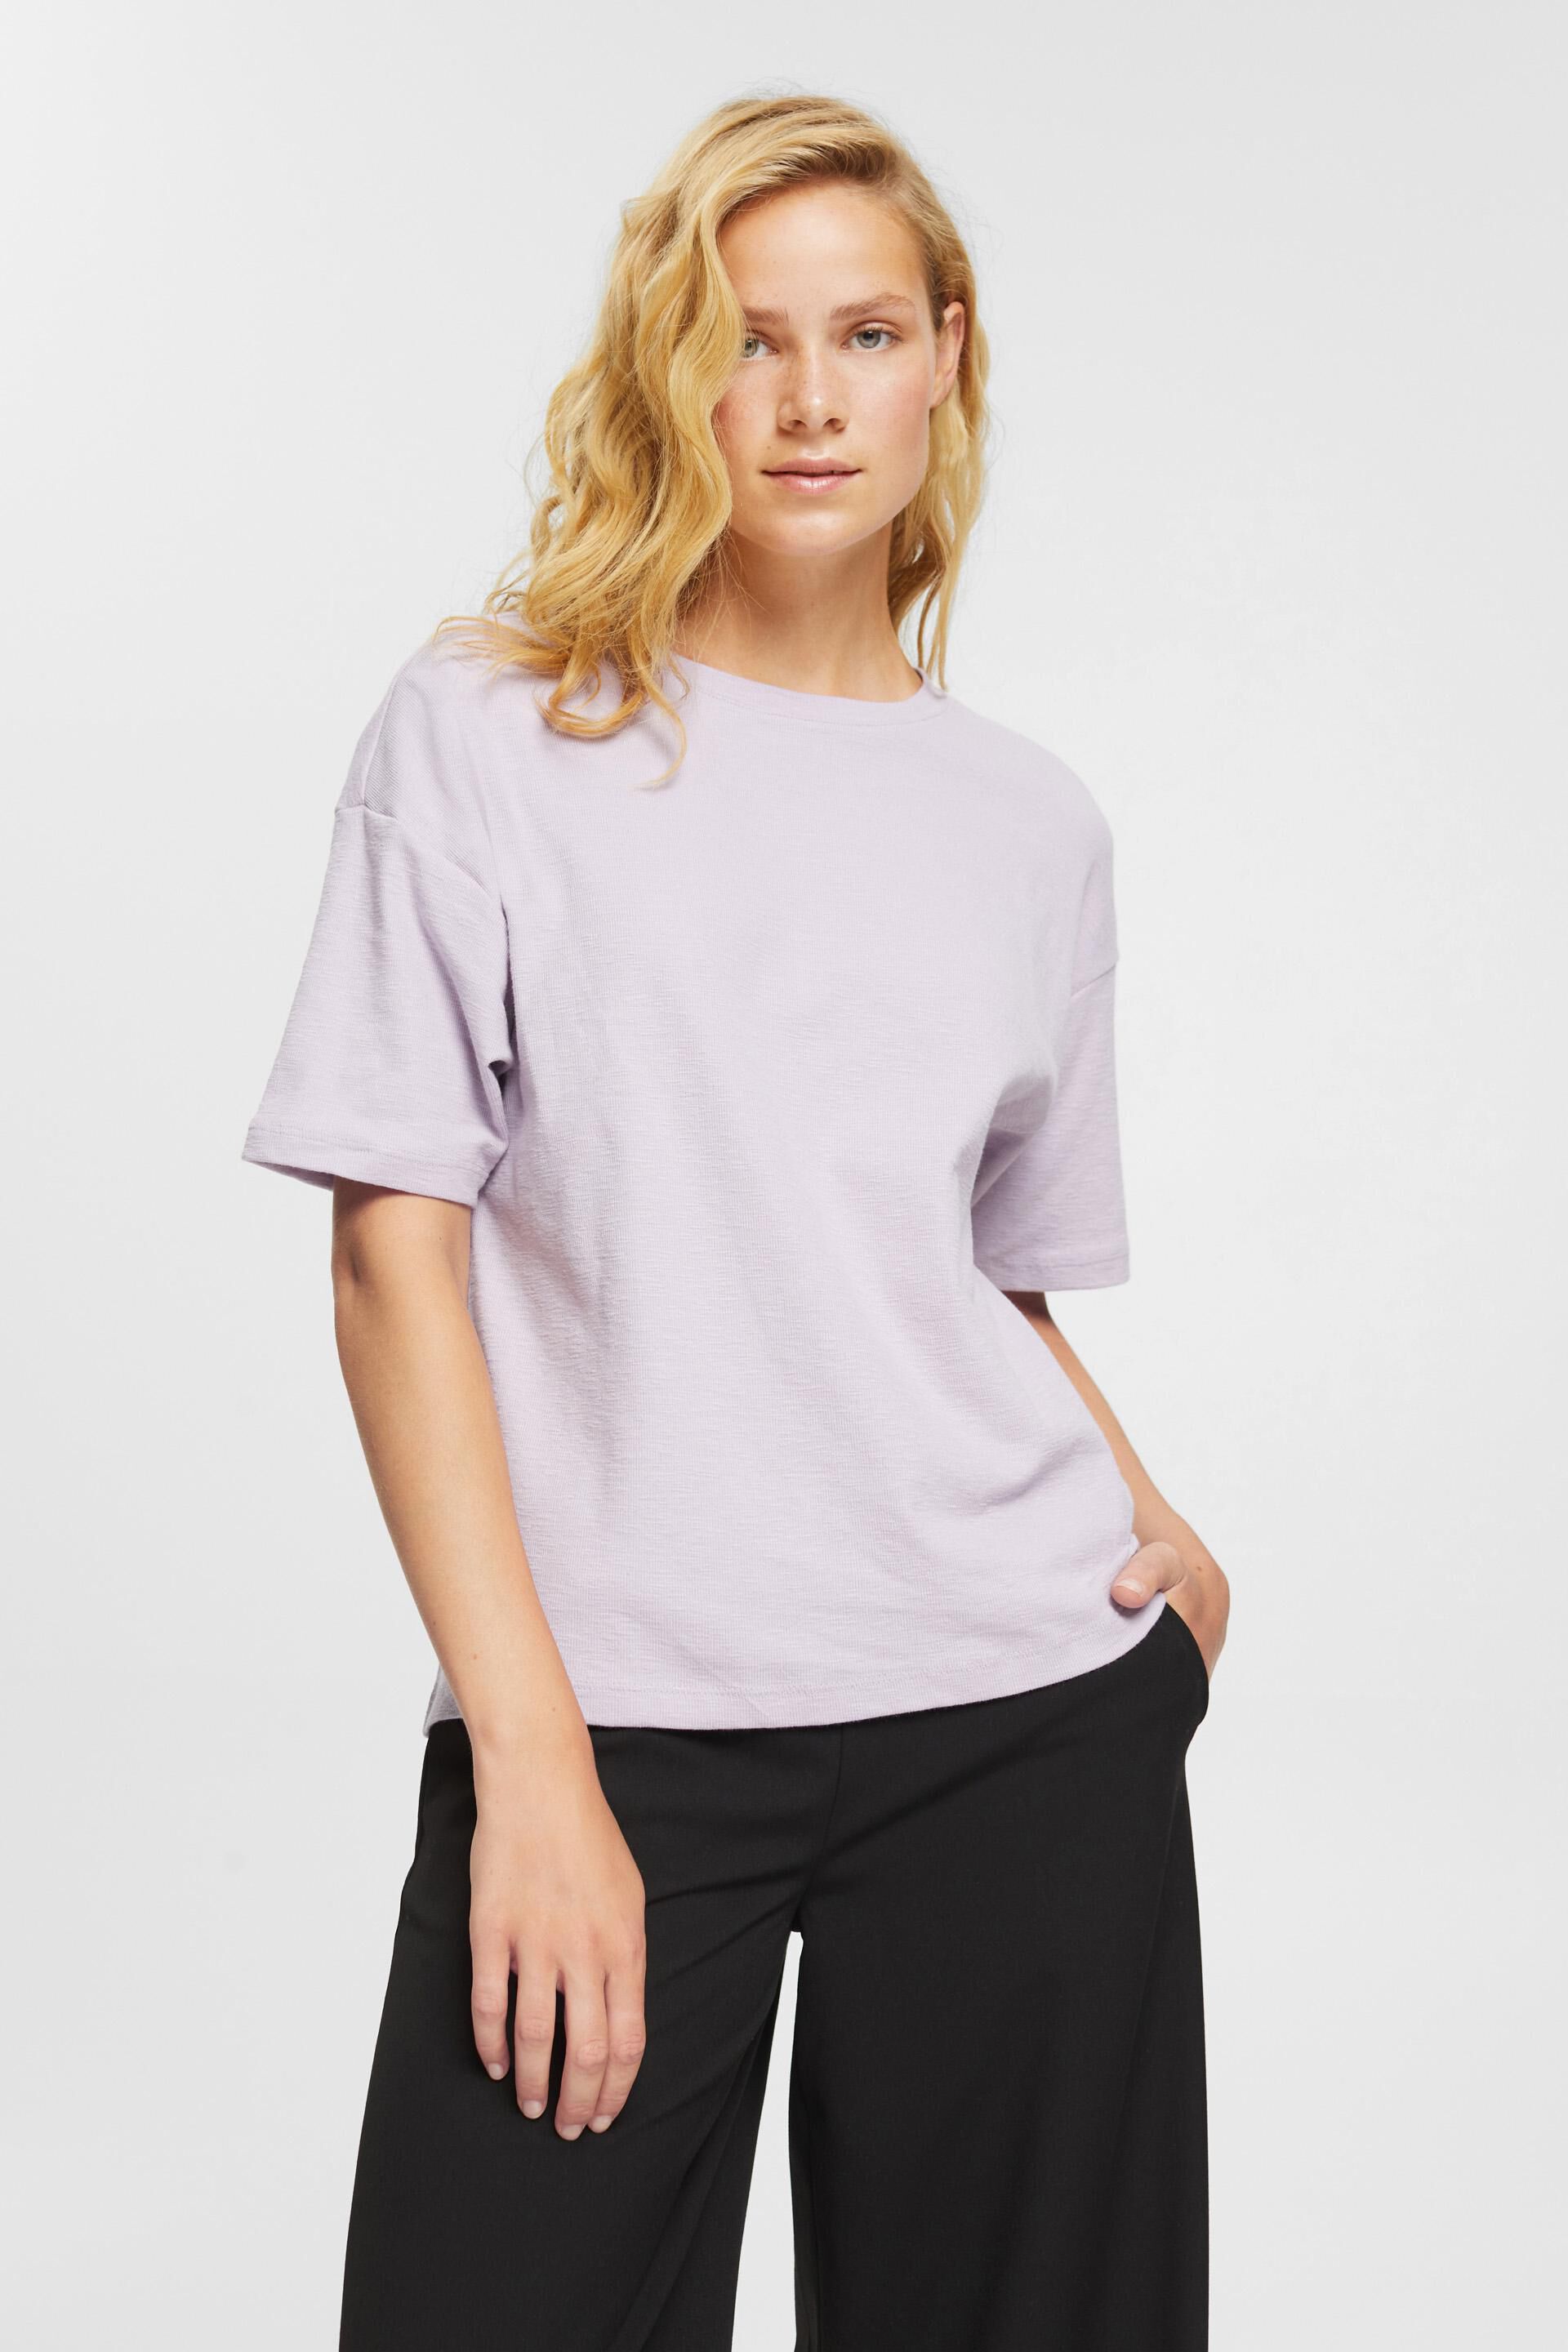 Esprit T-shirt jasnoszary Melan\u017cowy W stylu casual Moda Koszulki T-shirty 